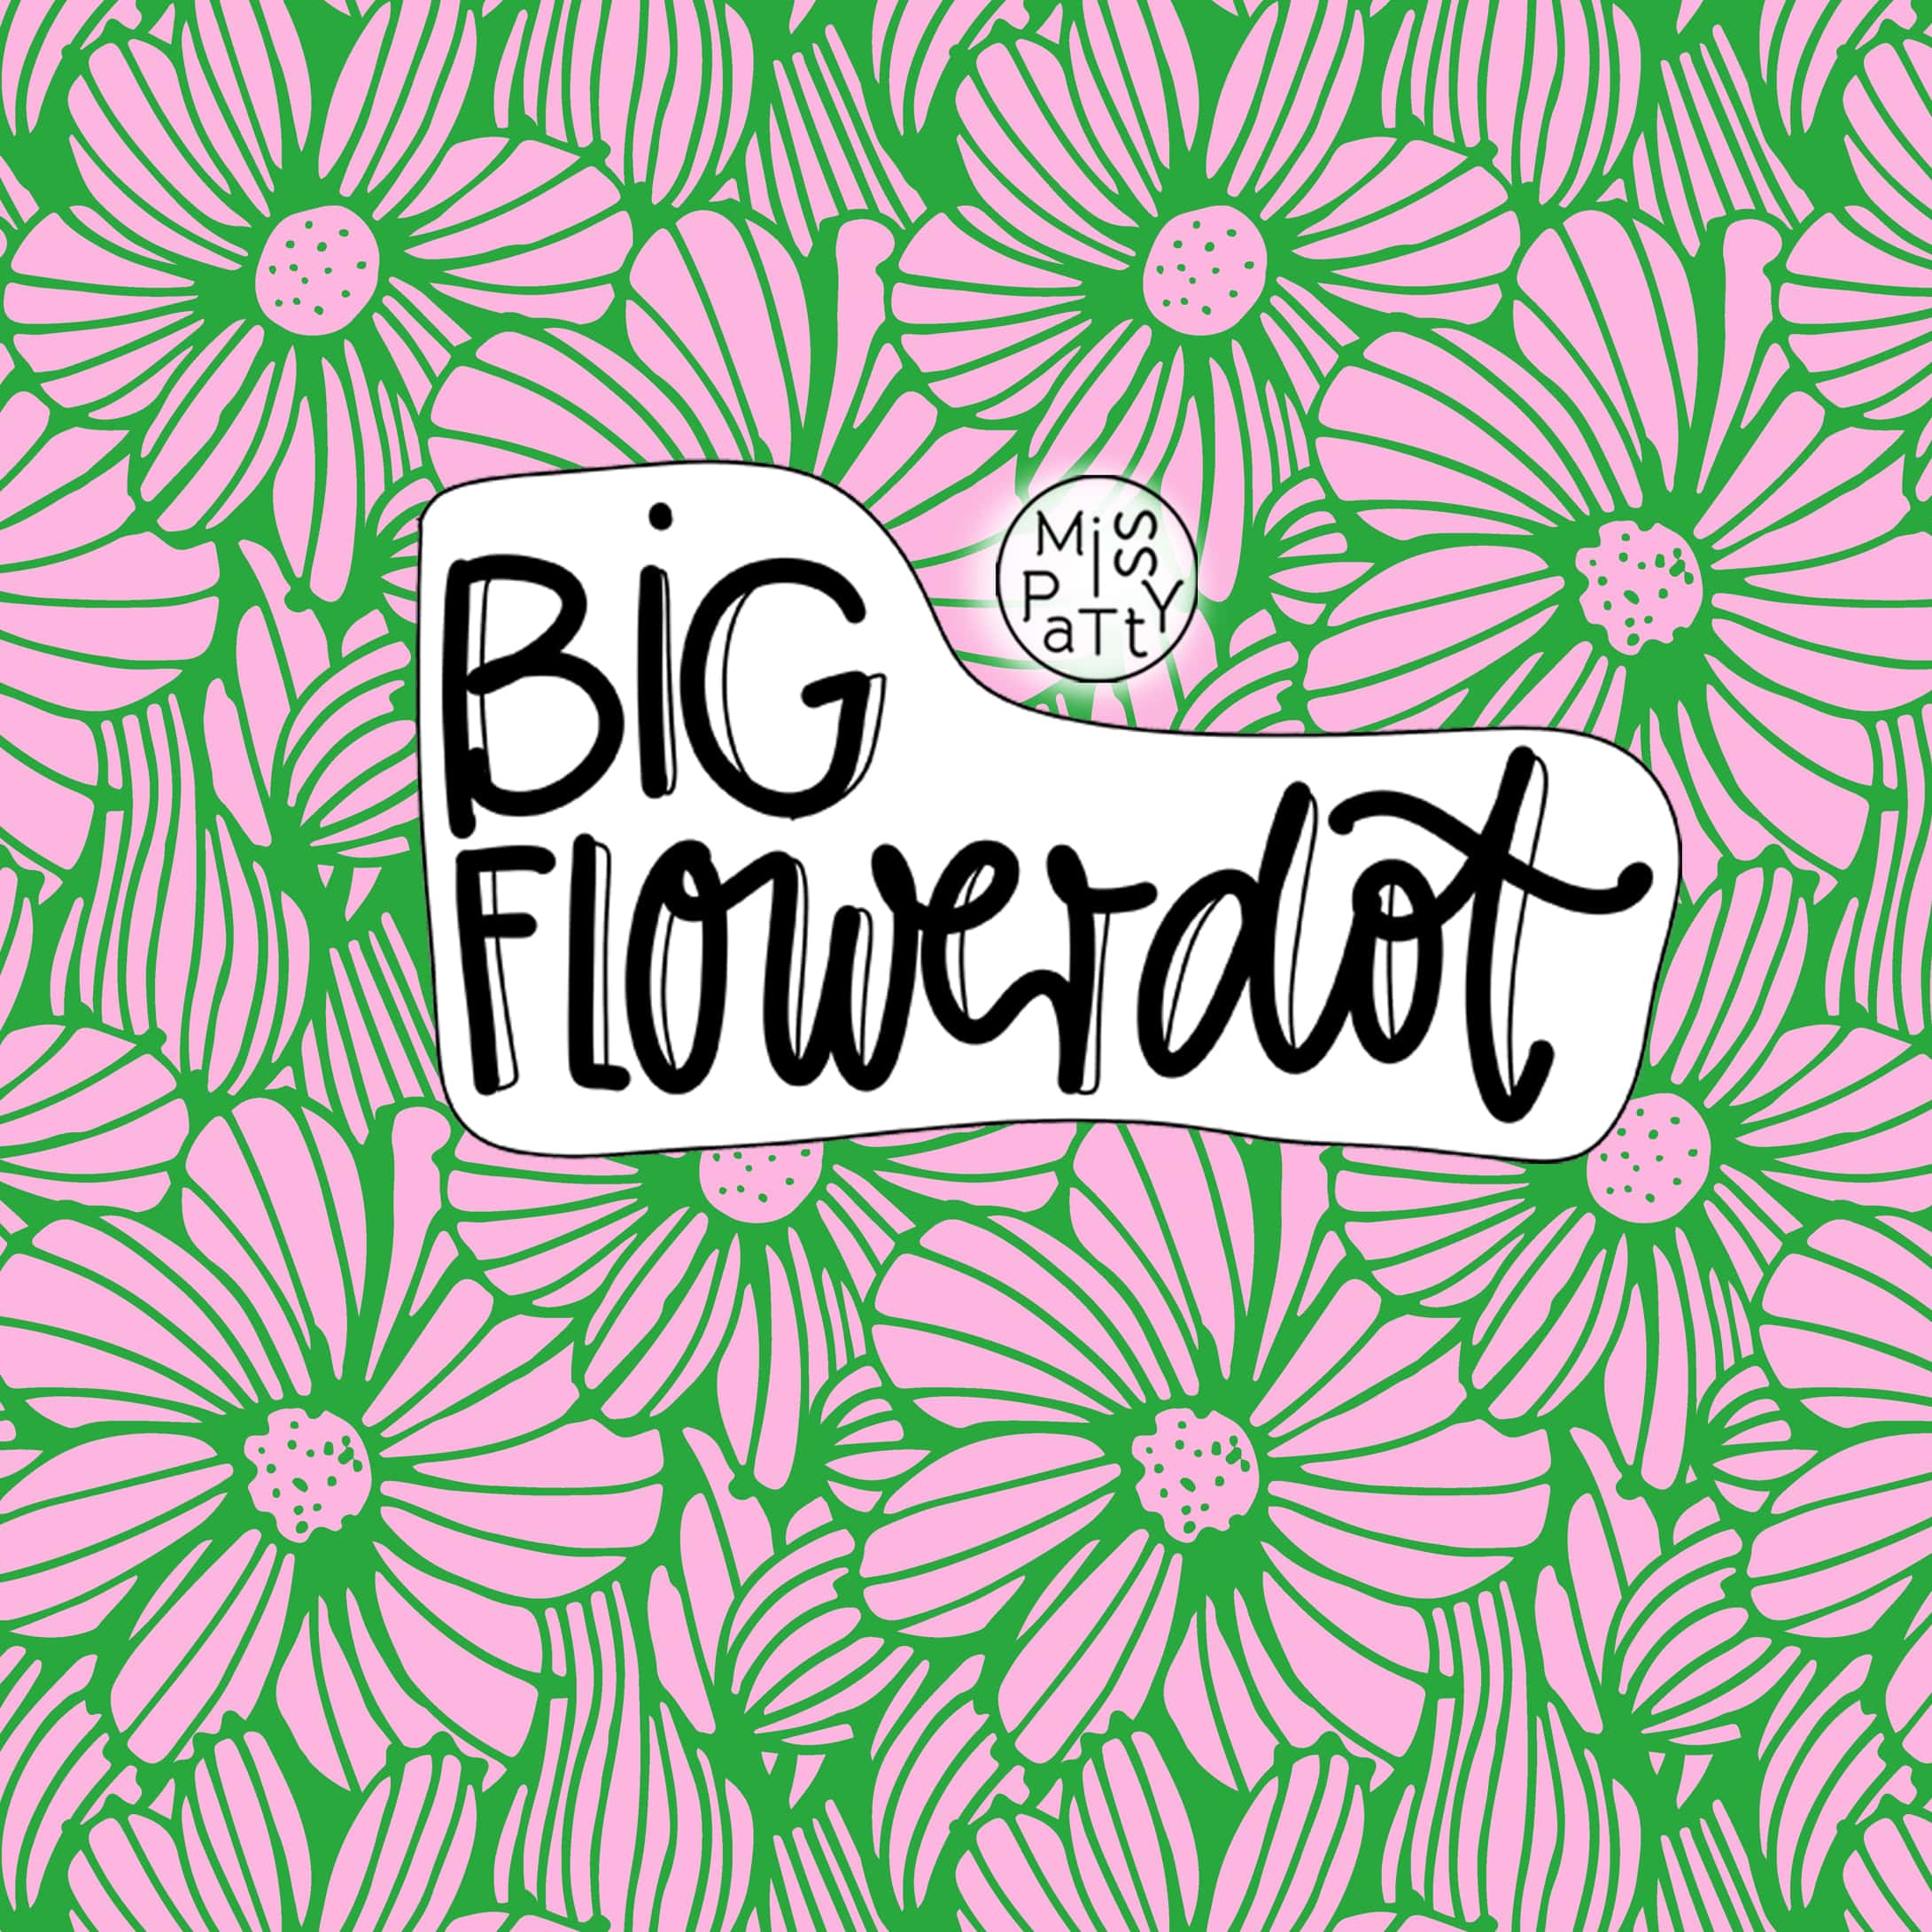 Big Flowerdot